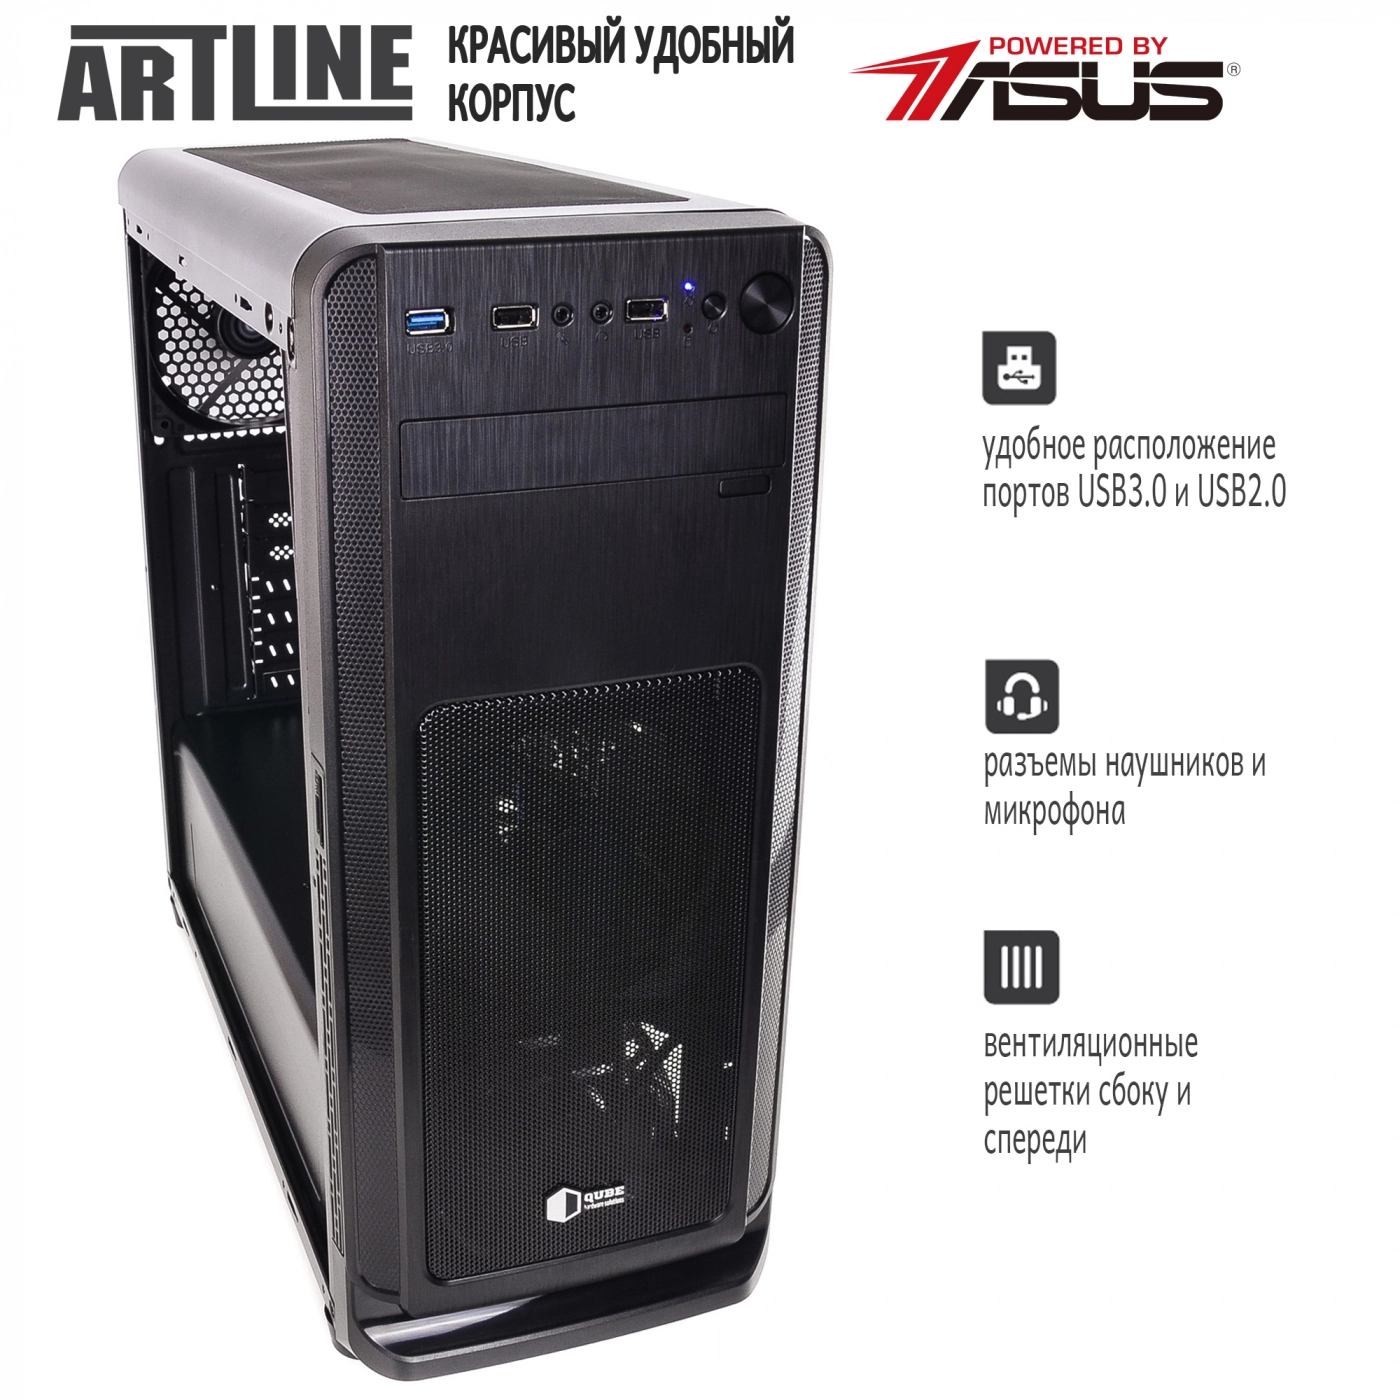 Купить Сервер ARTLINE Business T27v11 - фото 5